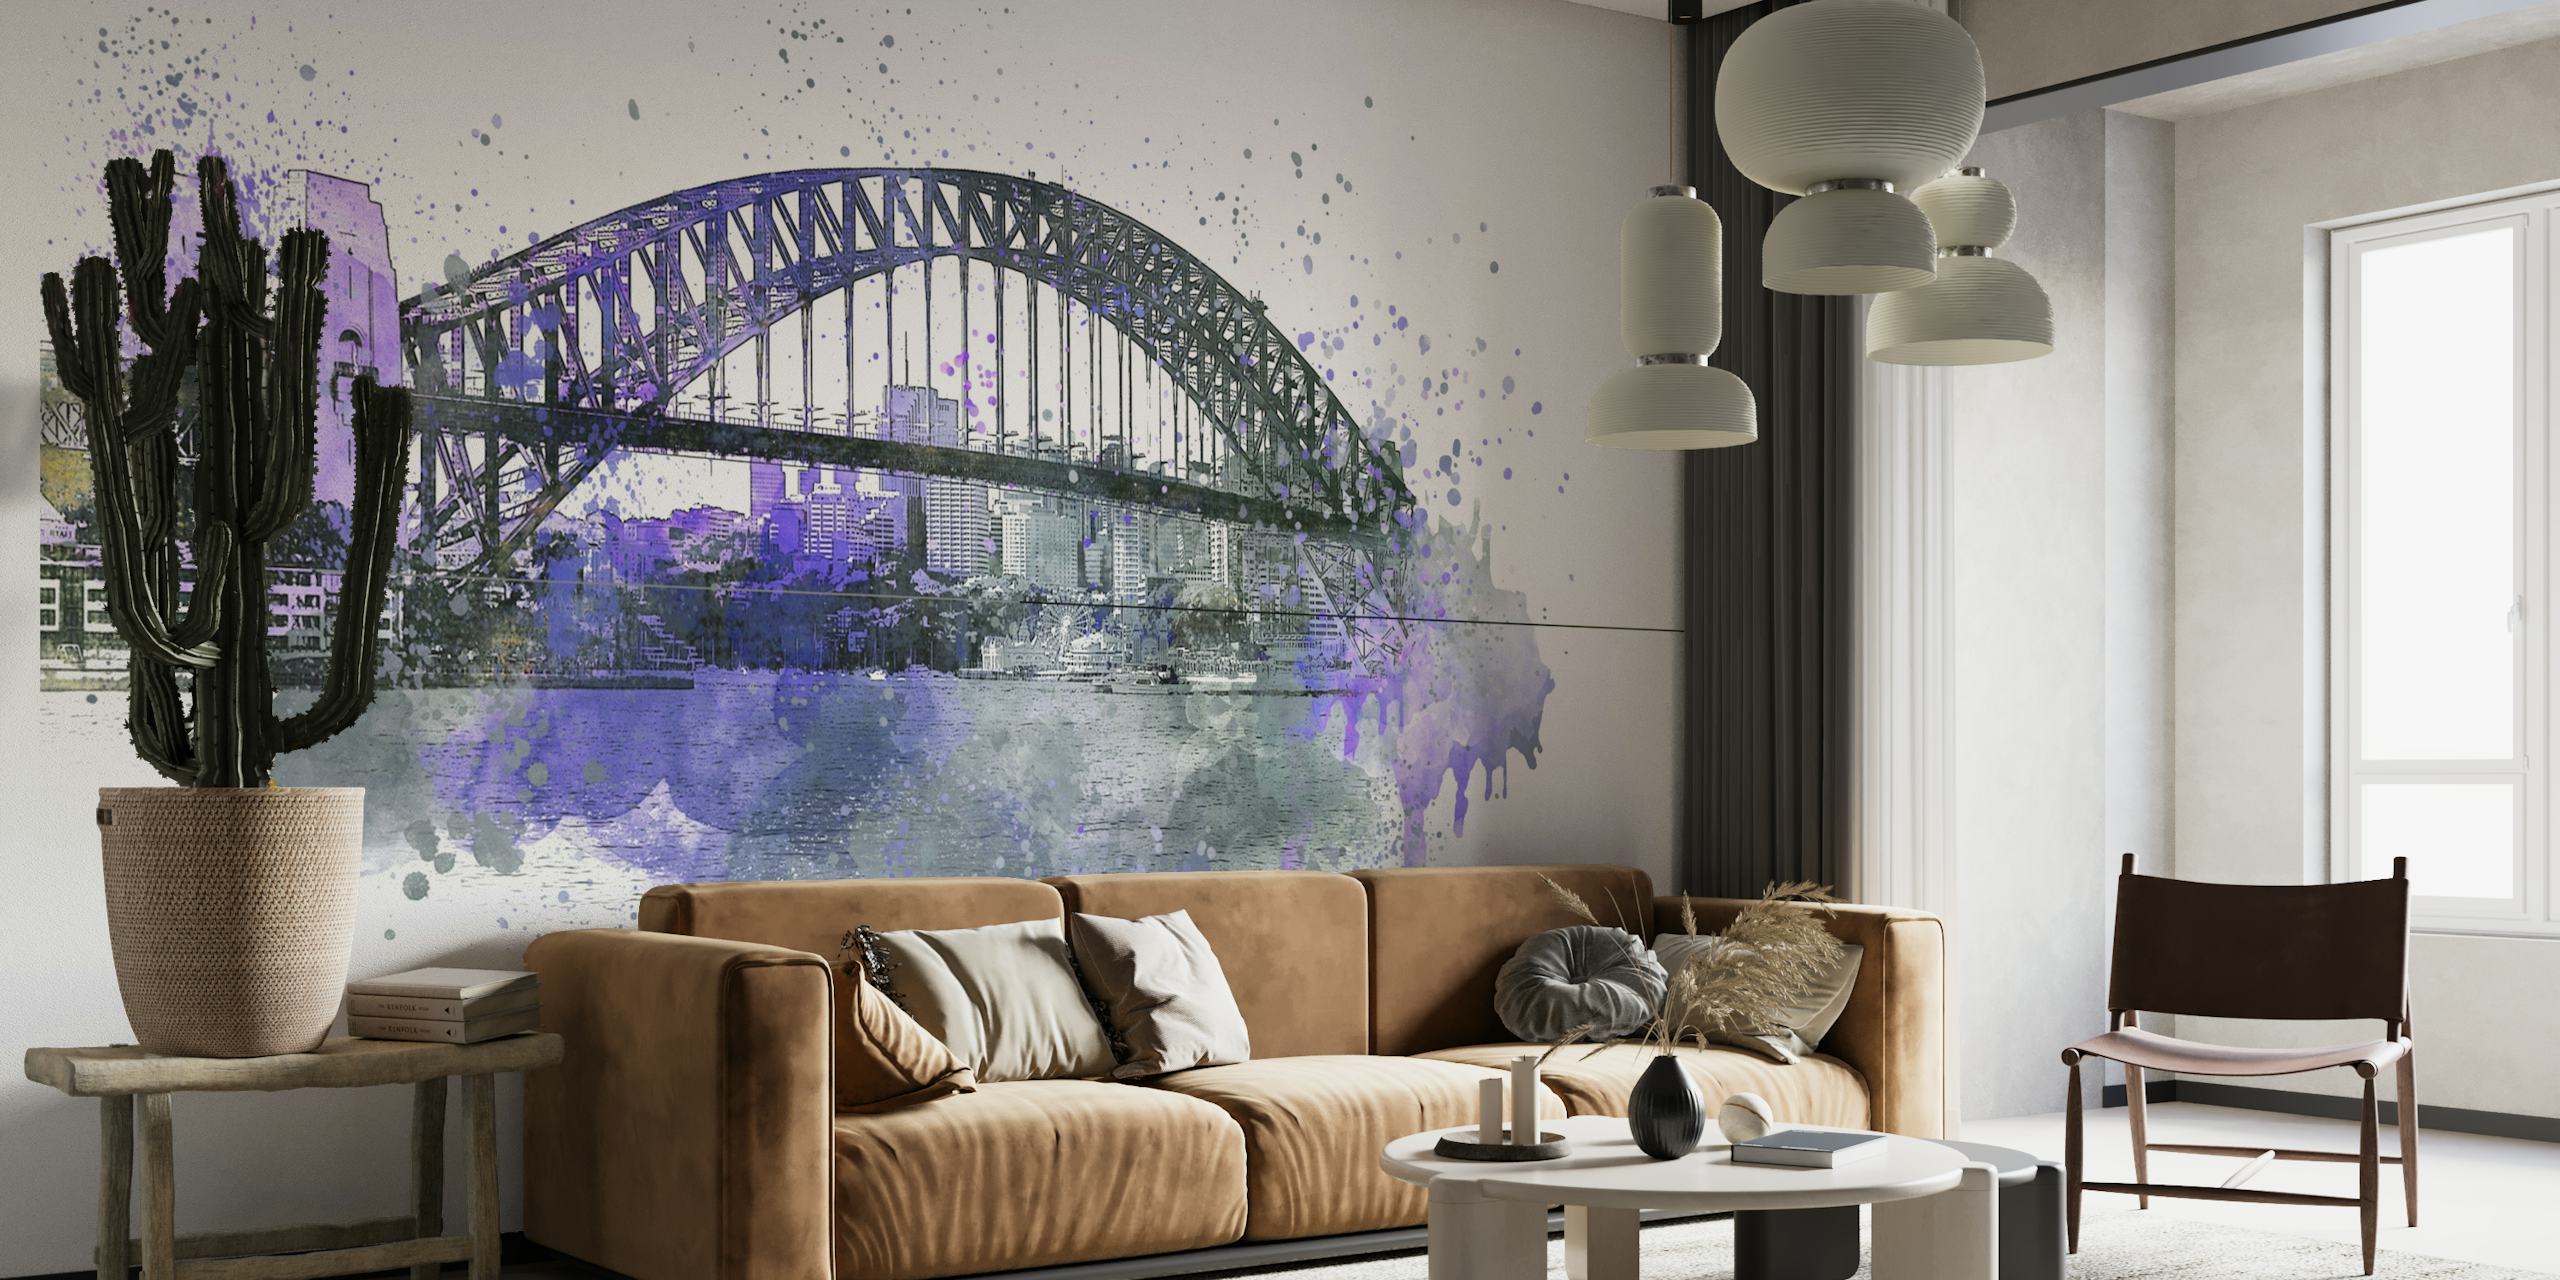 Artystyczny akwarelowy mural przedstawiający most Sydney Harbour Bridge w odcieniach fioletu i szarości